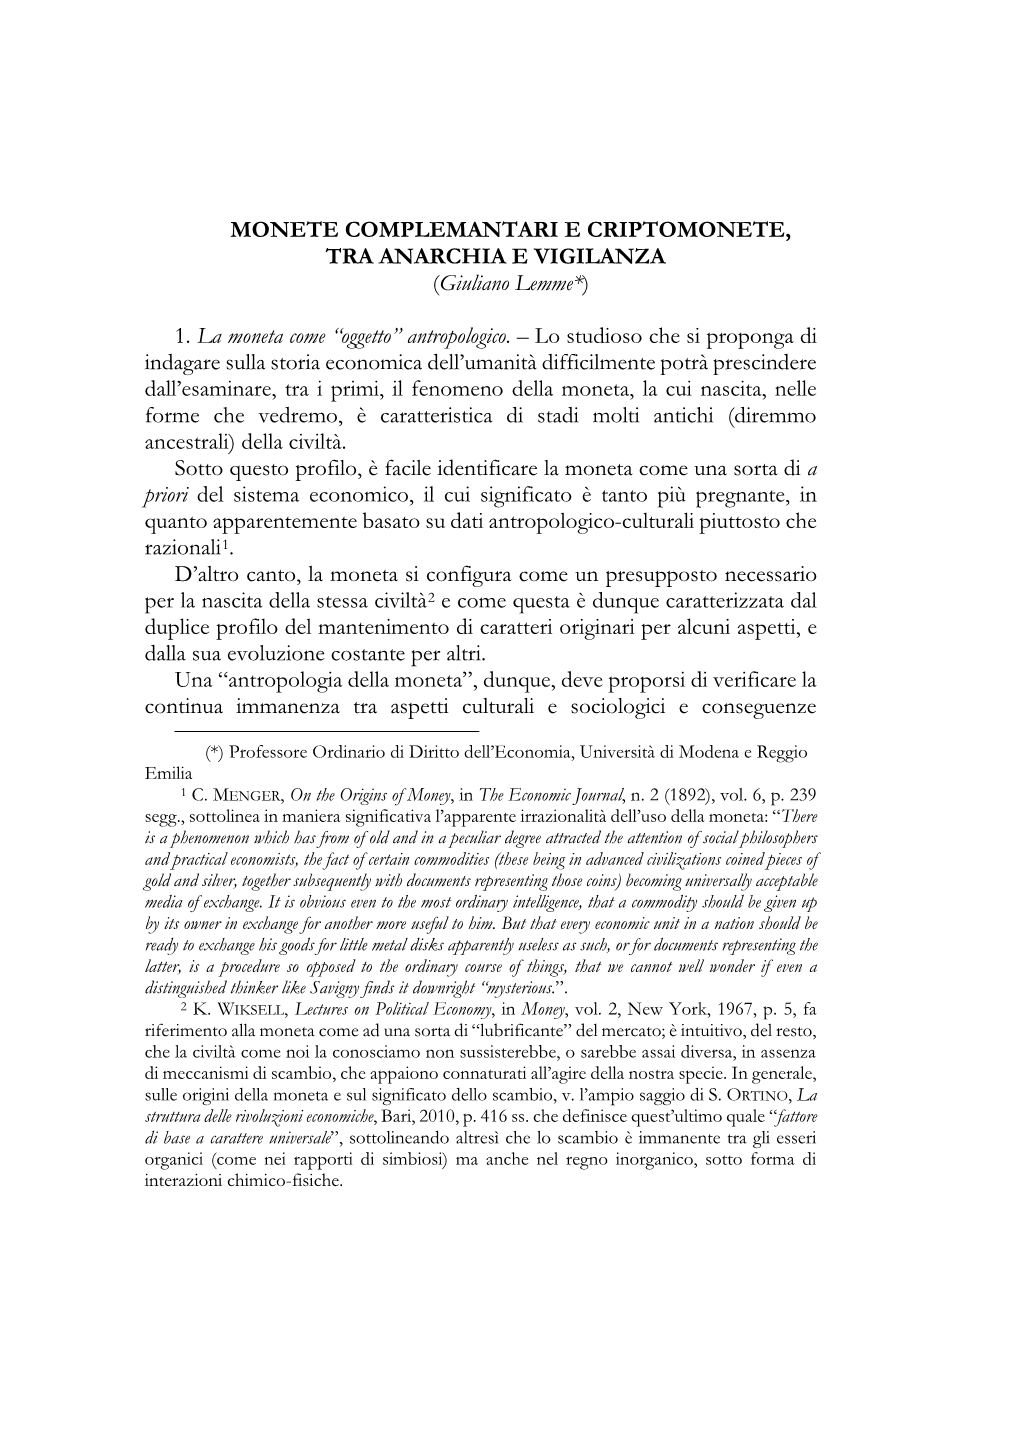 MONETE COMPLEMANTARI E CRIPTOMONETE, TRA ANARCHIA E VIGILANZA (Giuliano Lemme*)